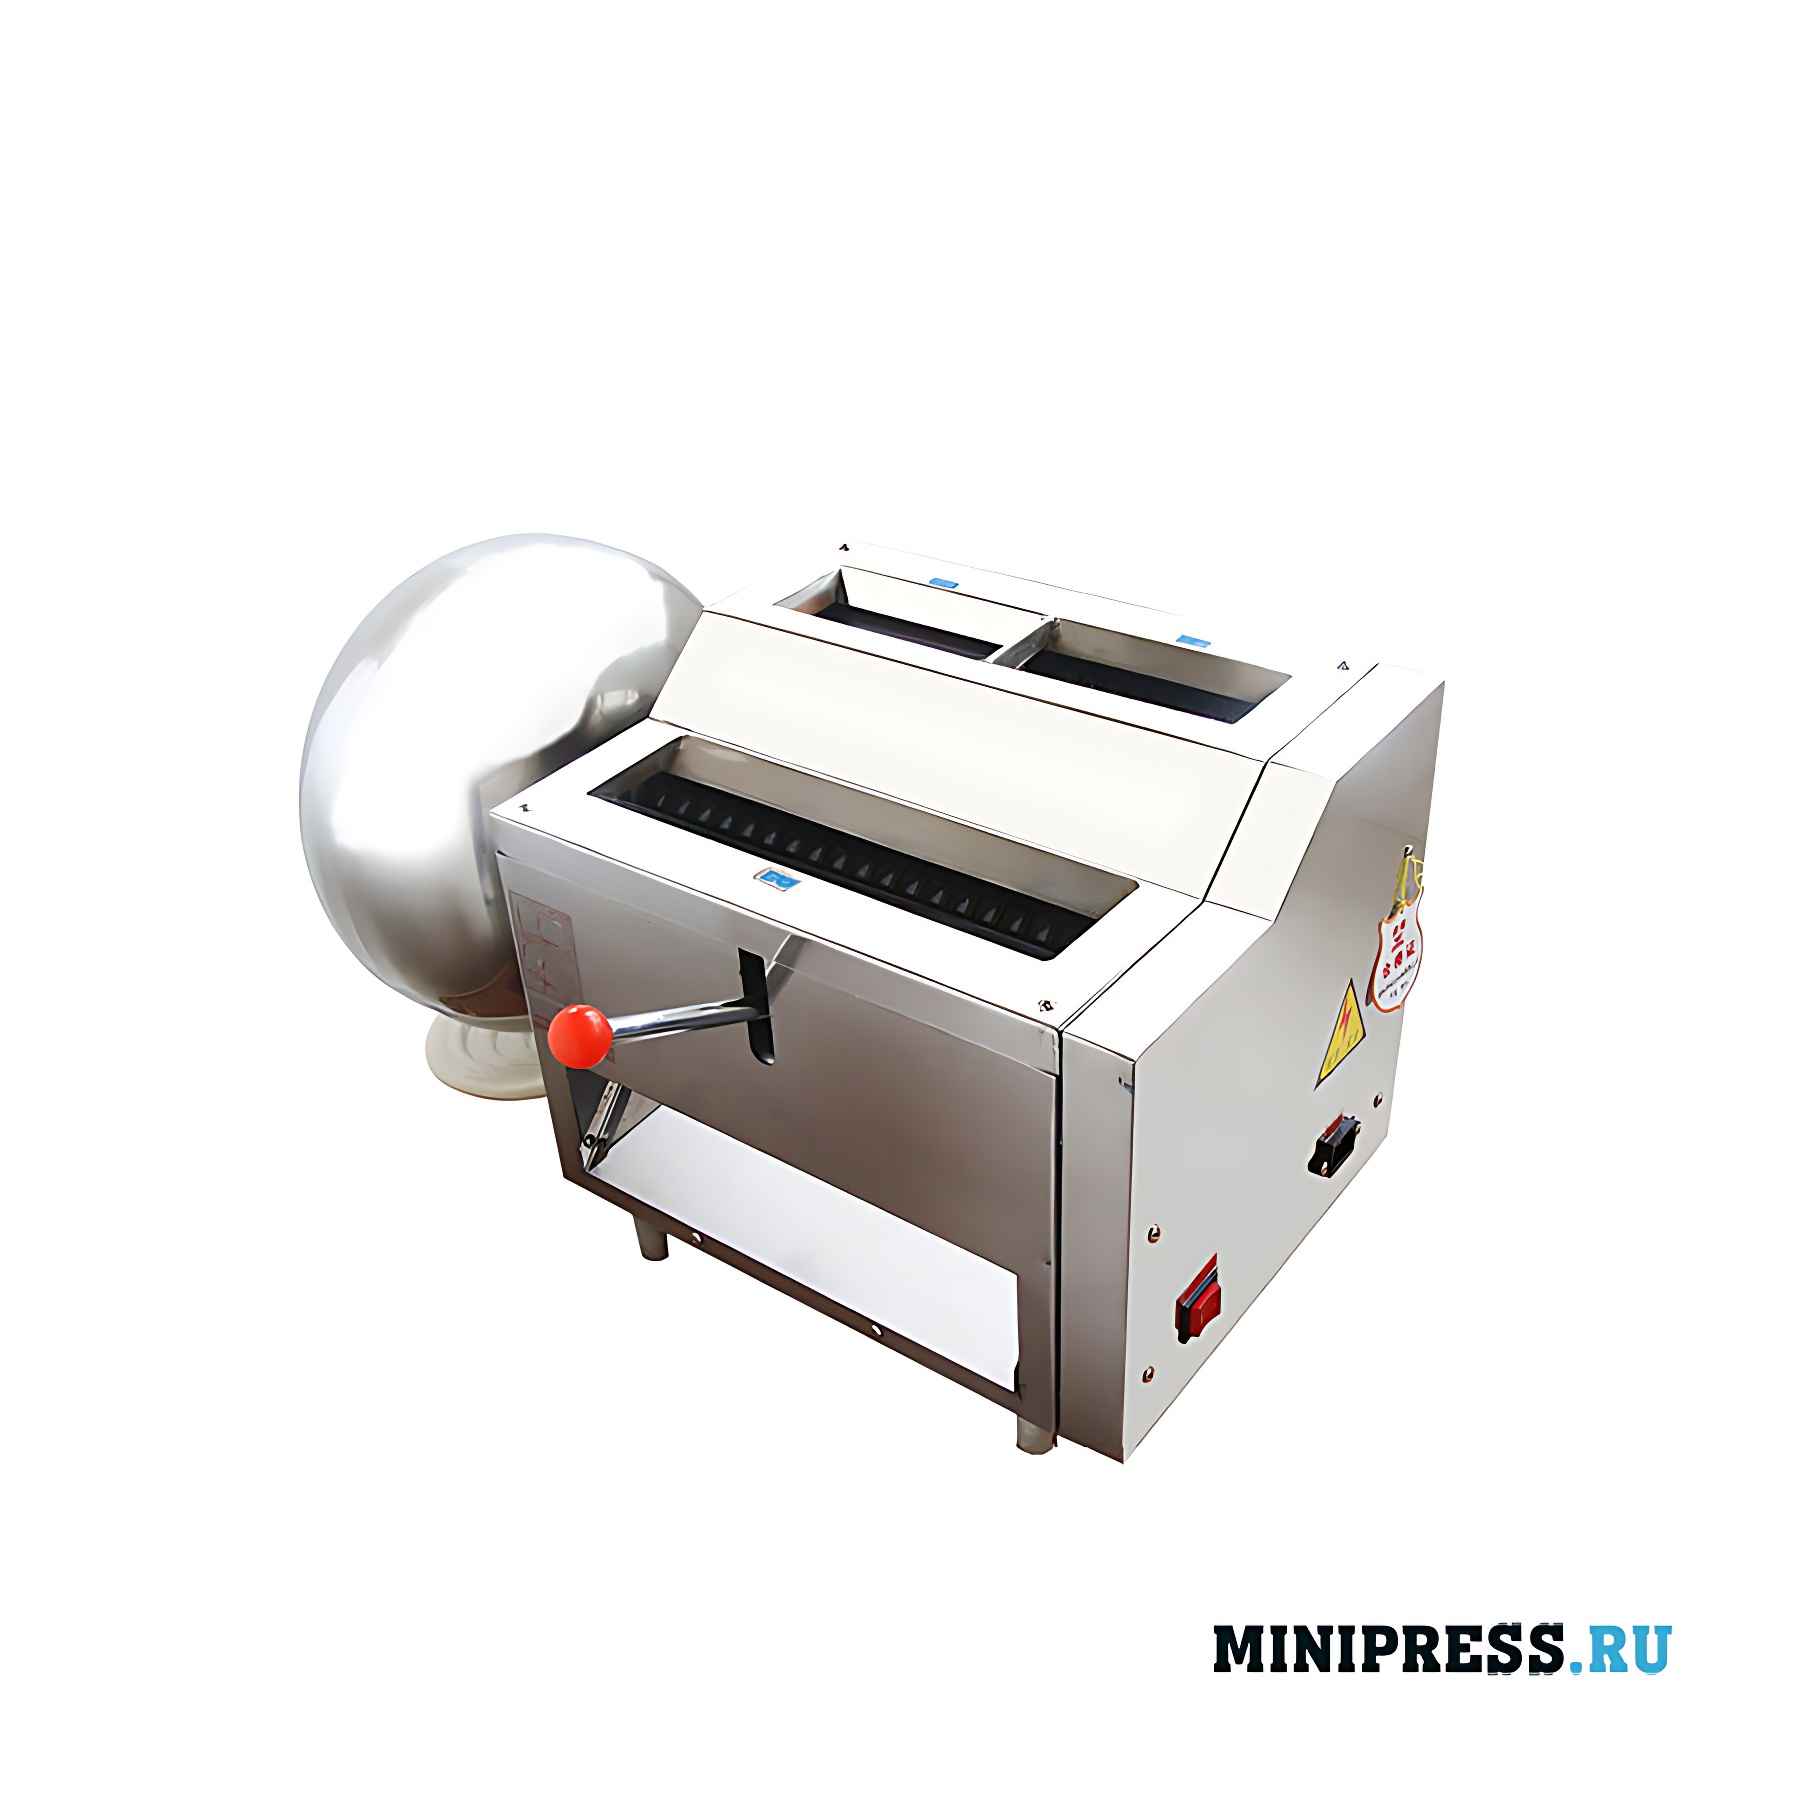 Оборудование для производство драже и бойлов диаметром до 30 мм